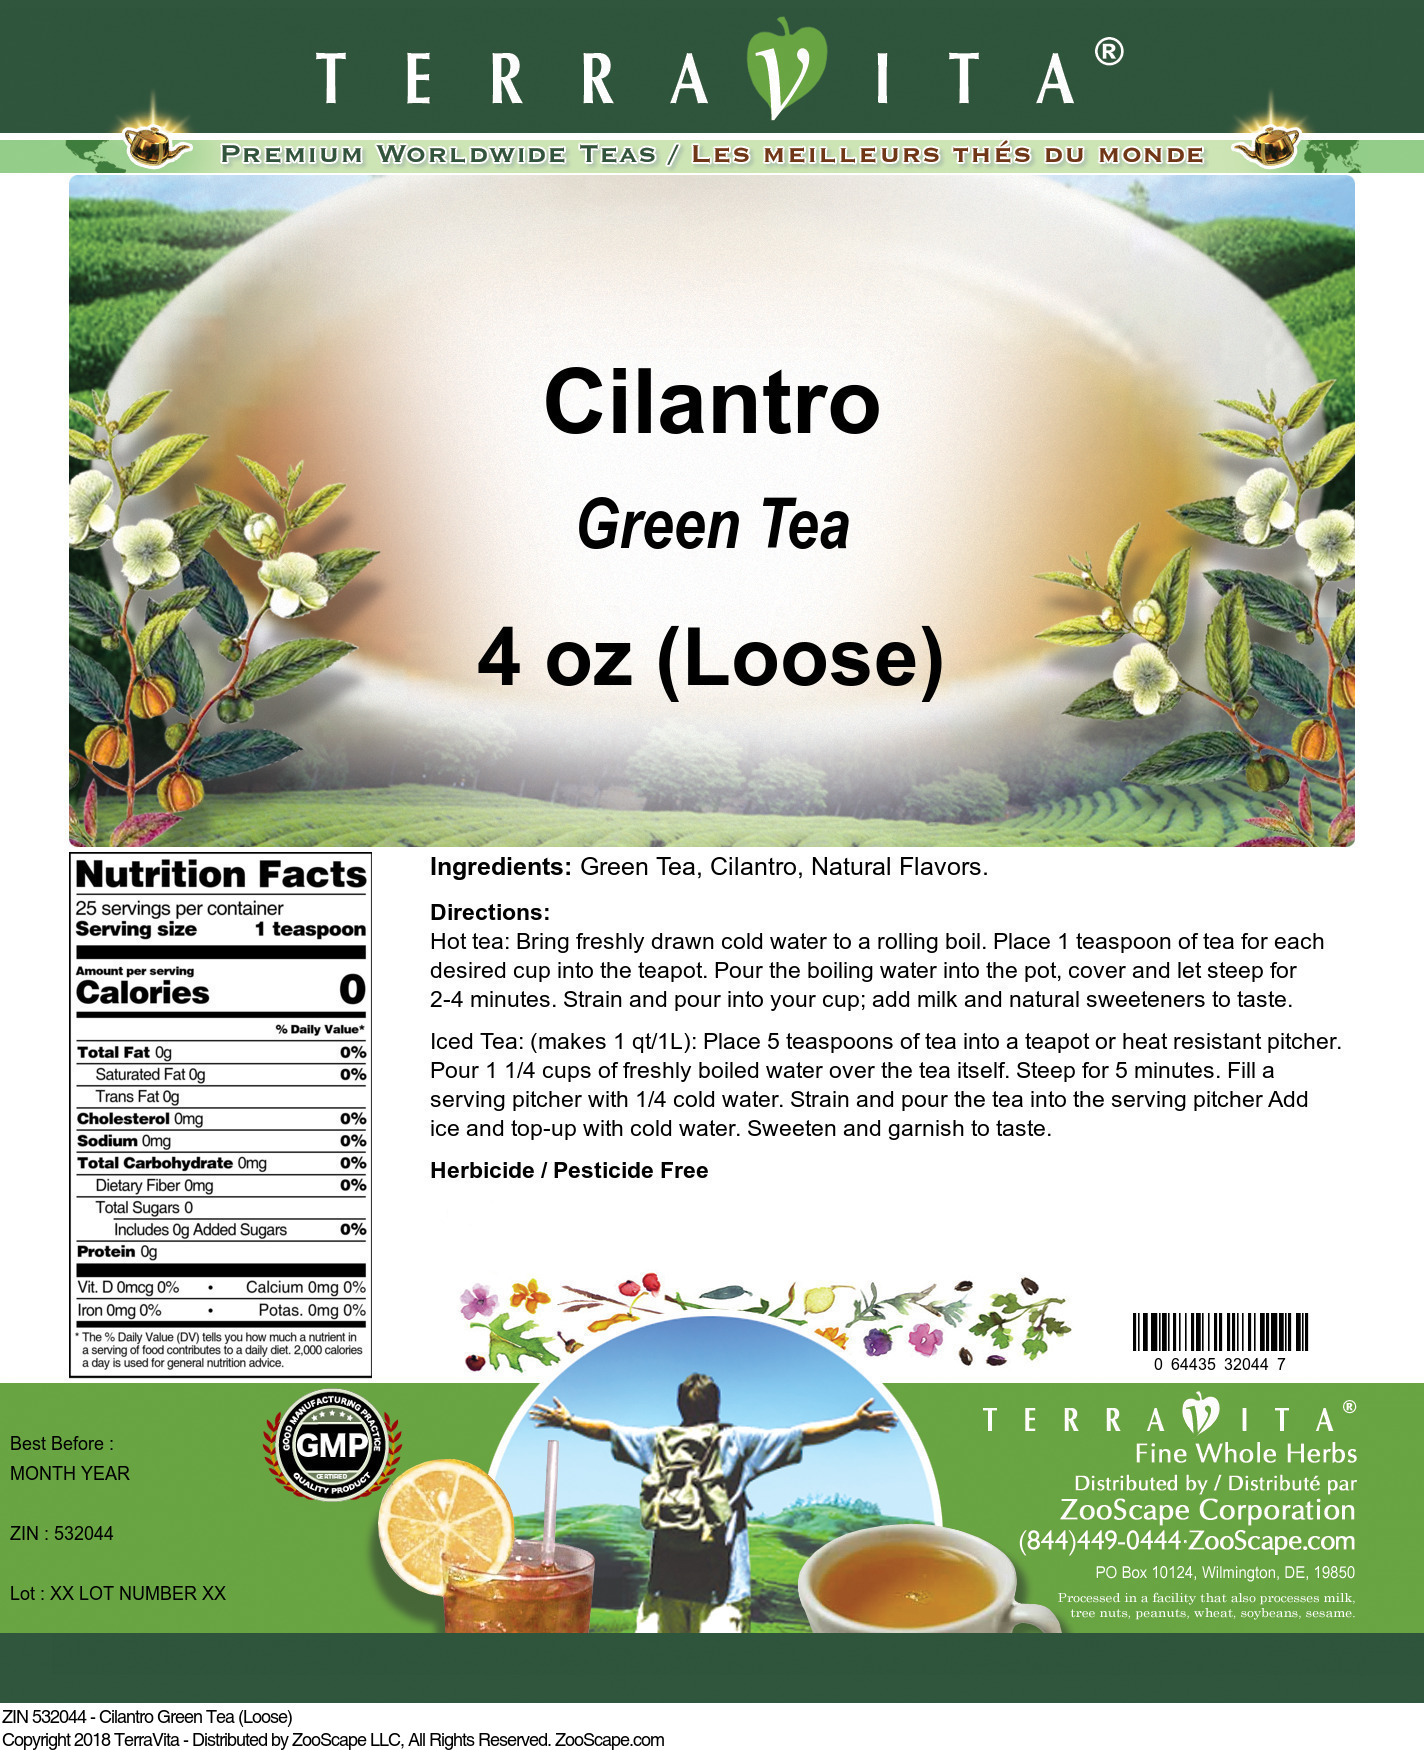 Cilantro Green Tea (Loose) - Label